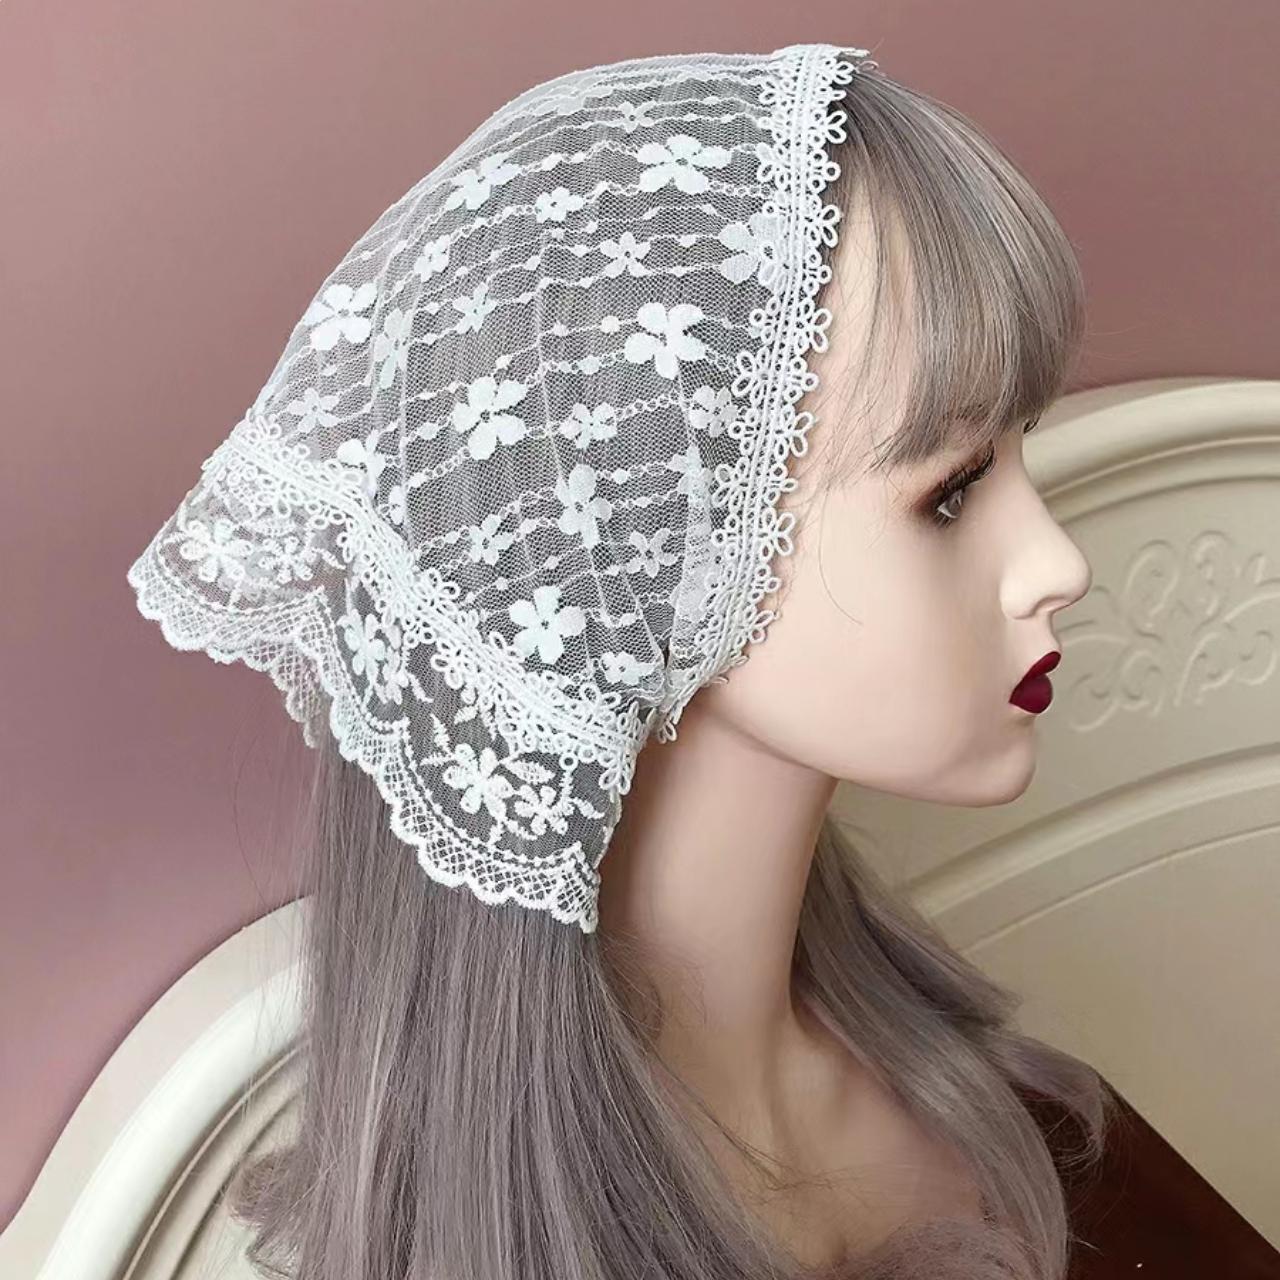 depop.com | Lace triangle headscarf